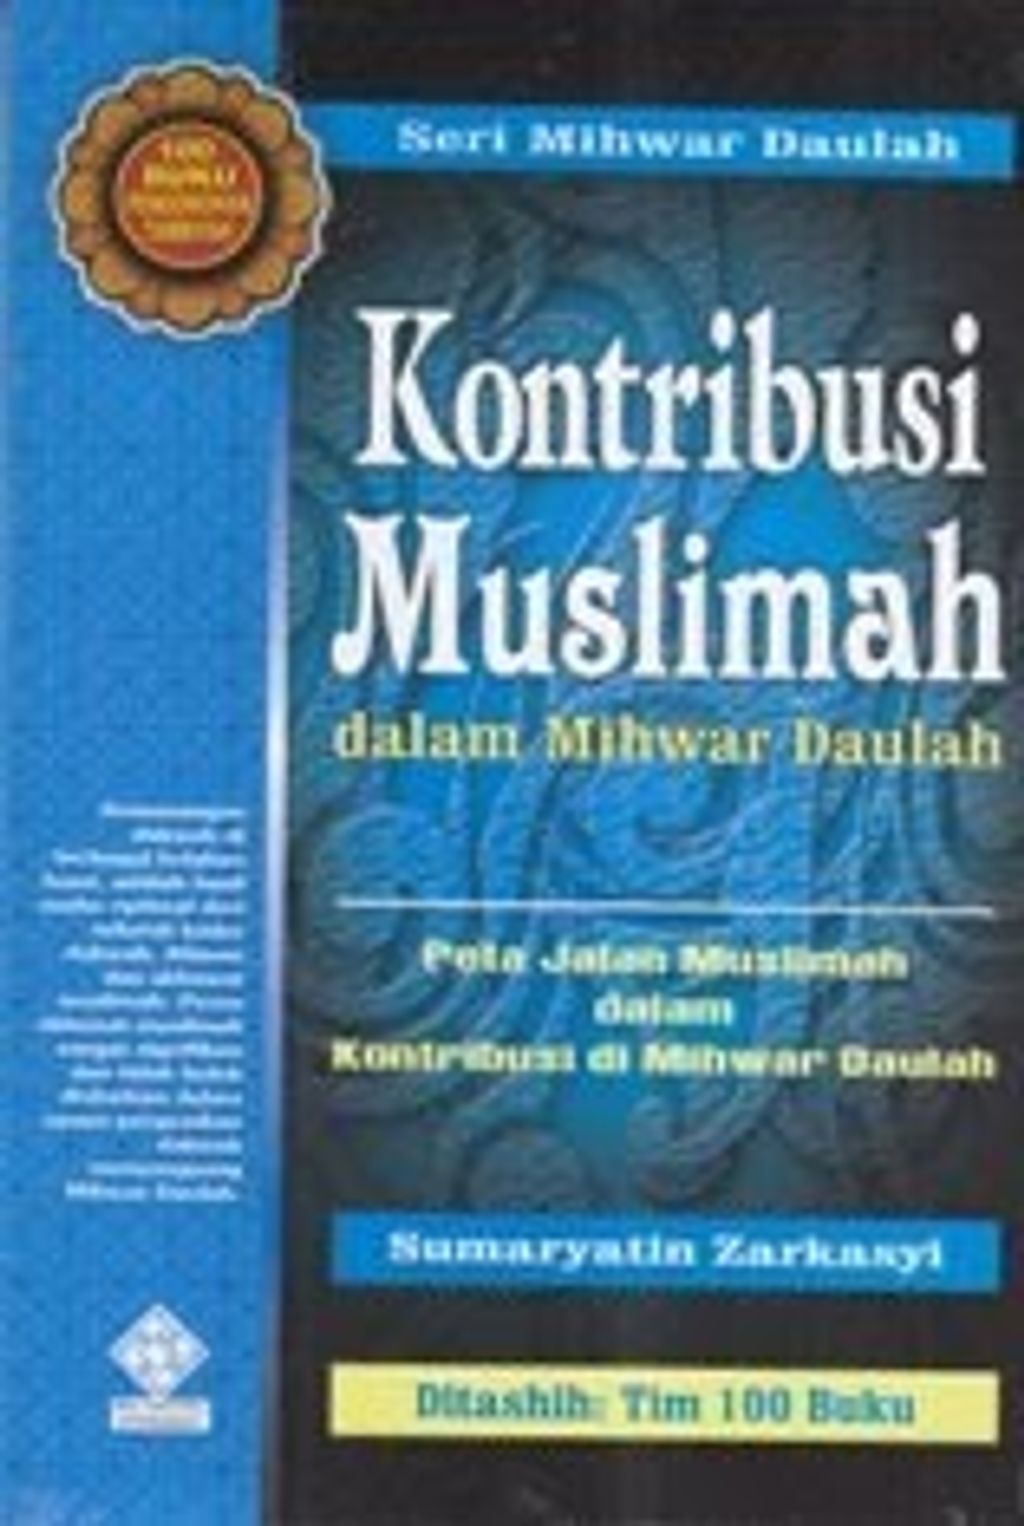 Kontribusi Muslimah dalam Mihwar Daulah.jpg